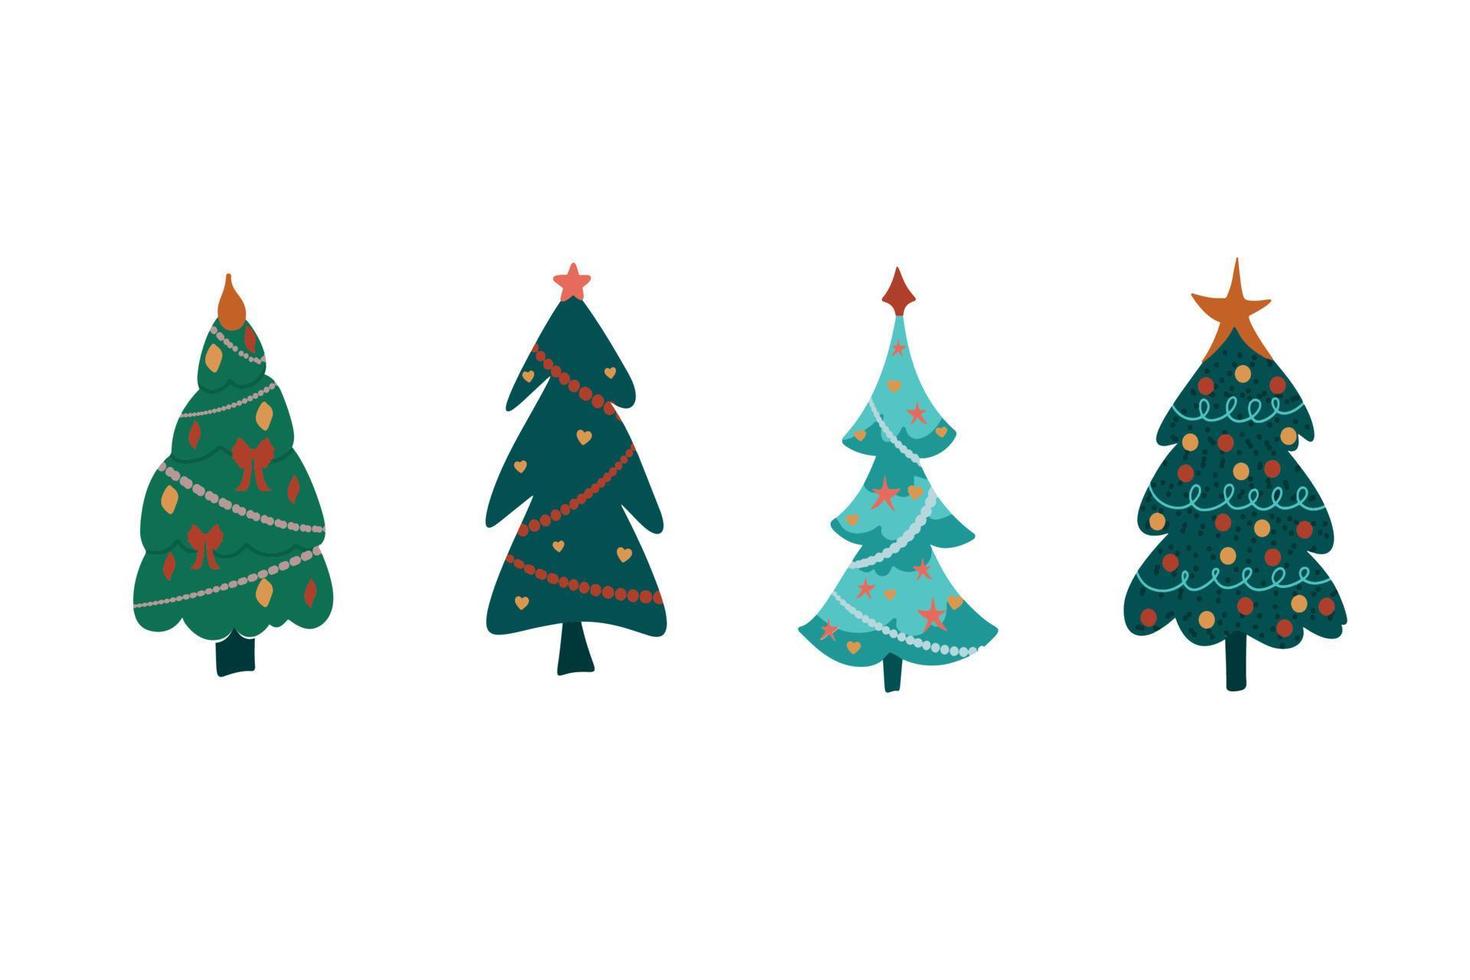 conjunto de árboles de Navidad de dibujos animados, pinos para tarjetas de felicitación, invitación, banner, web. árbol de símbolo tradicional de año nuevo y navidad con guirnaldas, bombilla, estrella. vacaciones de invierno. diseño plano, vectorial vector